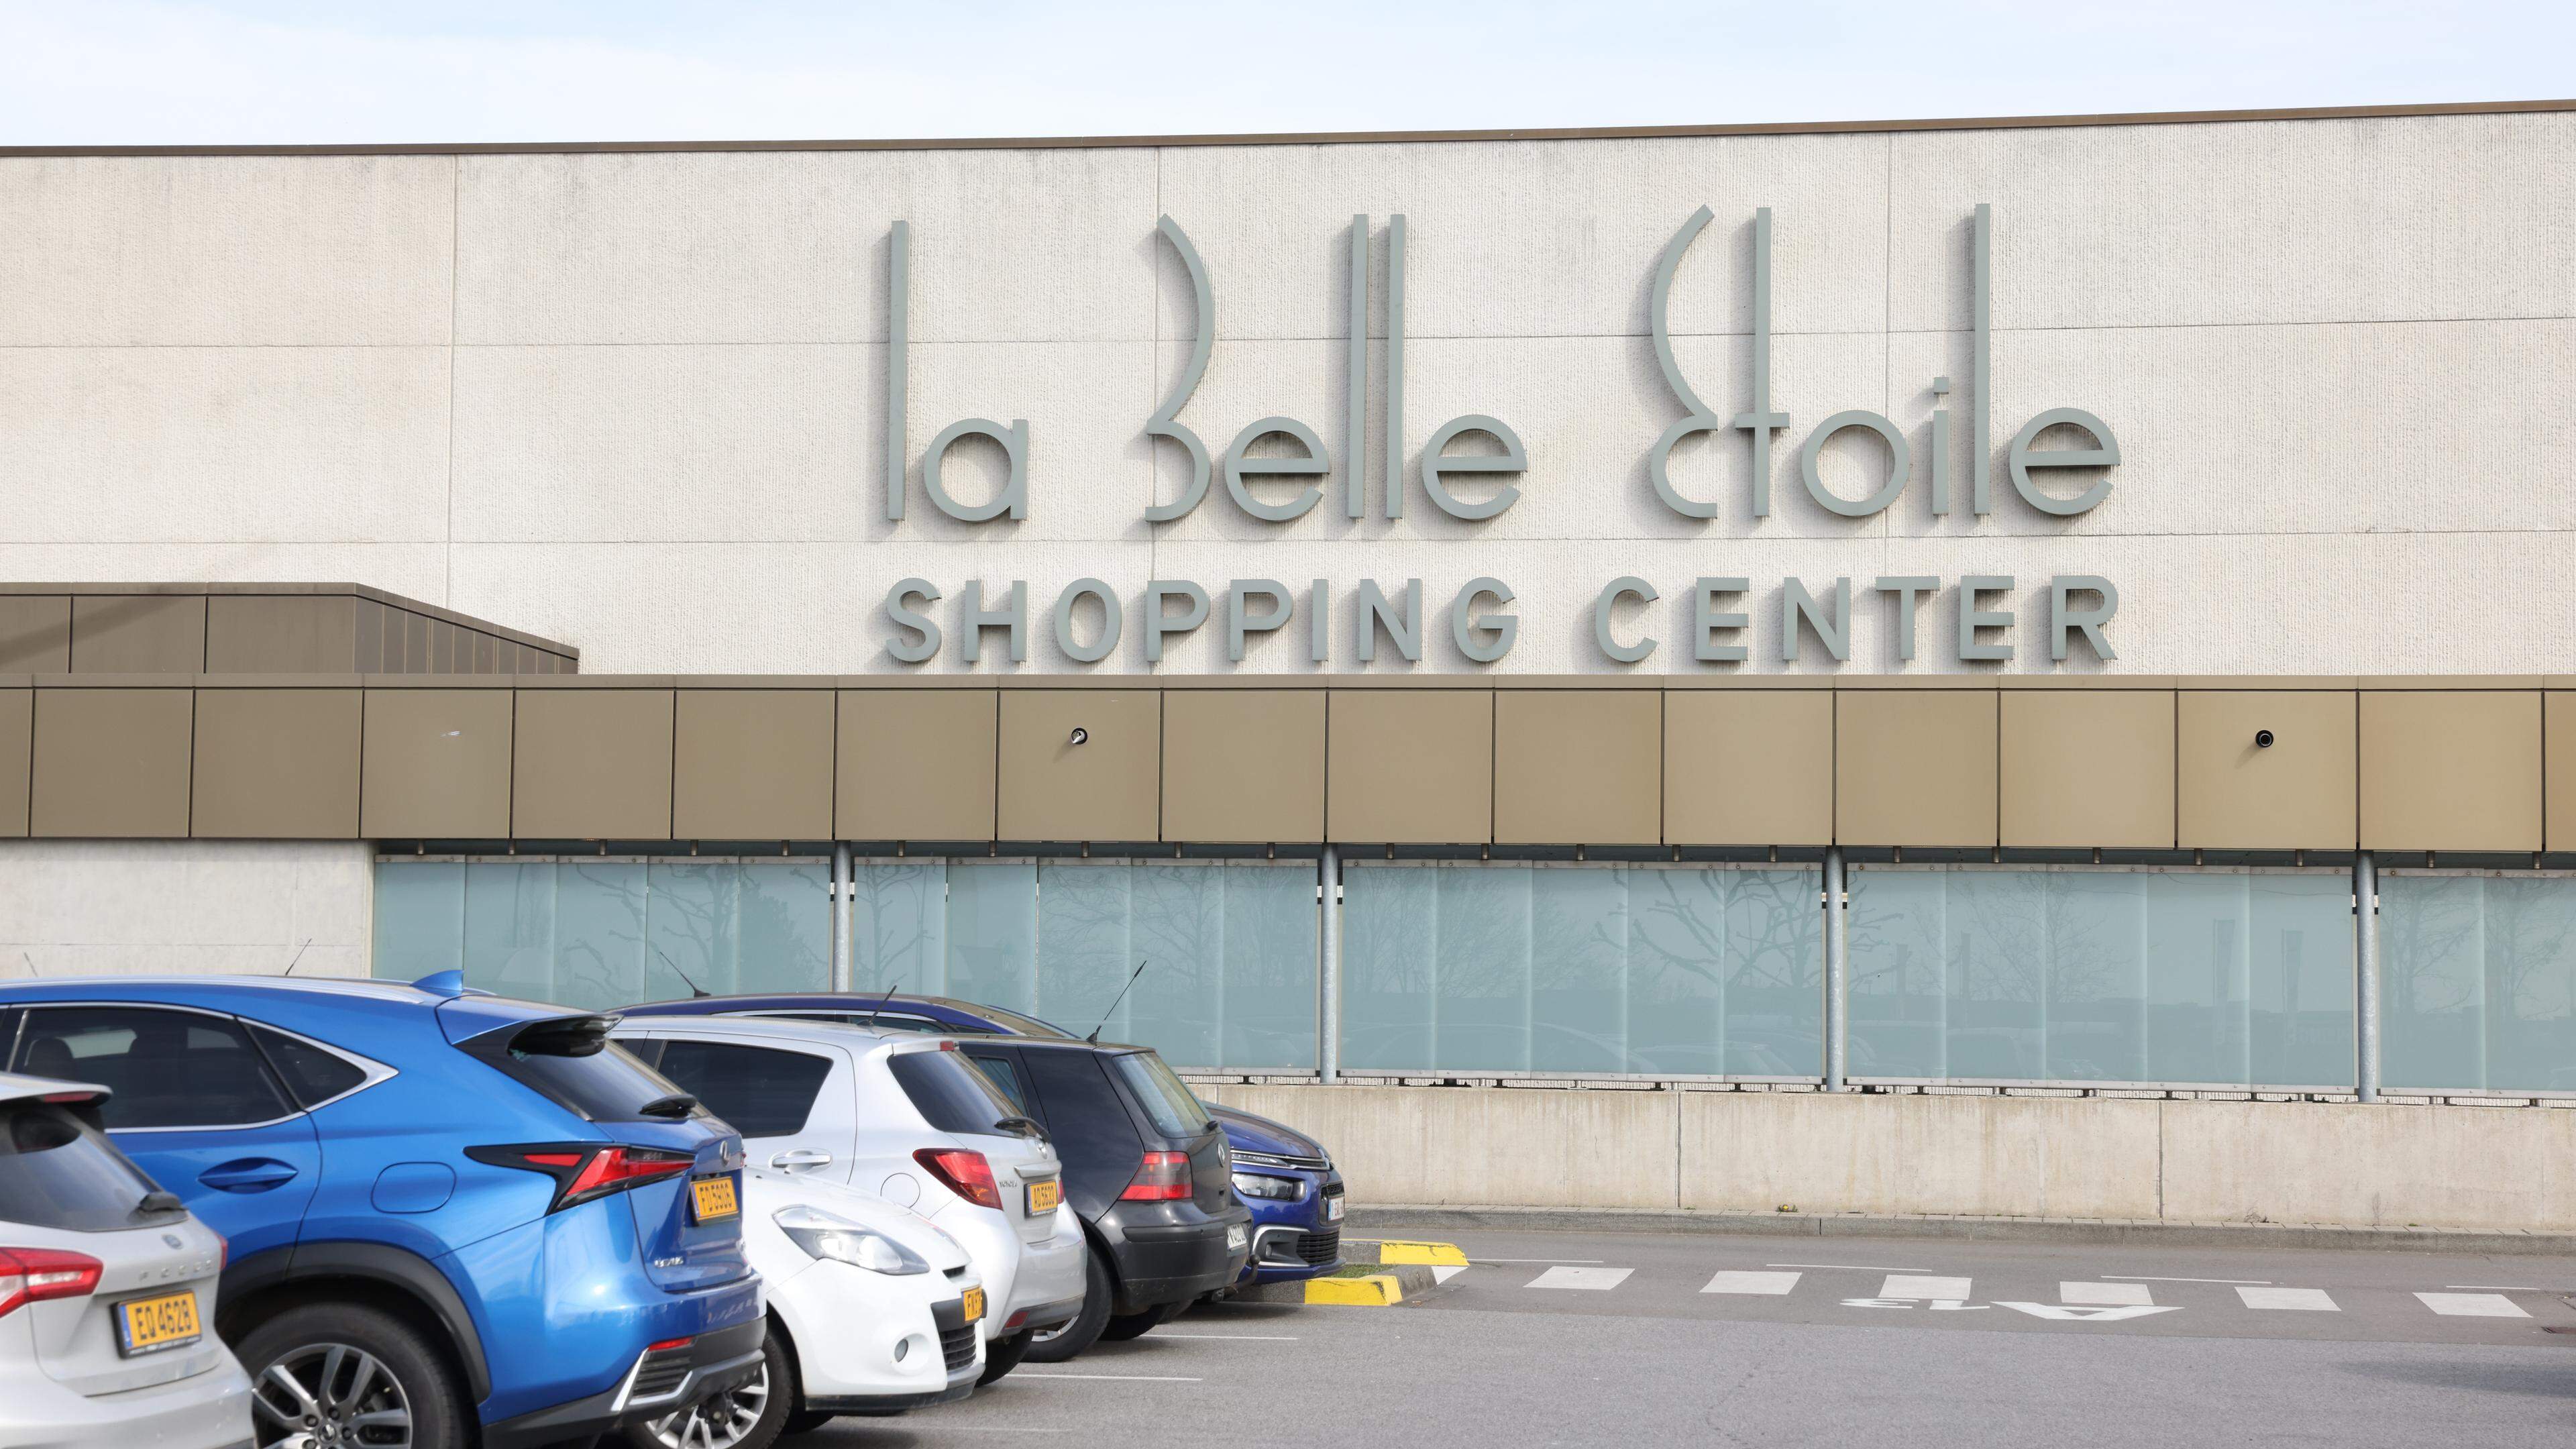 Seit 2019 befindet sich das Geschäft im Einkaufszentrum Belle Etoile.